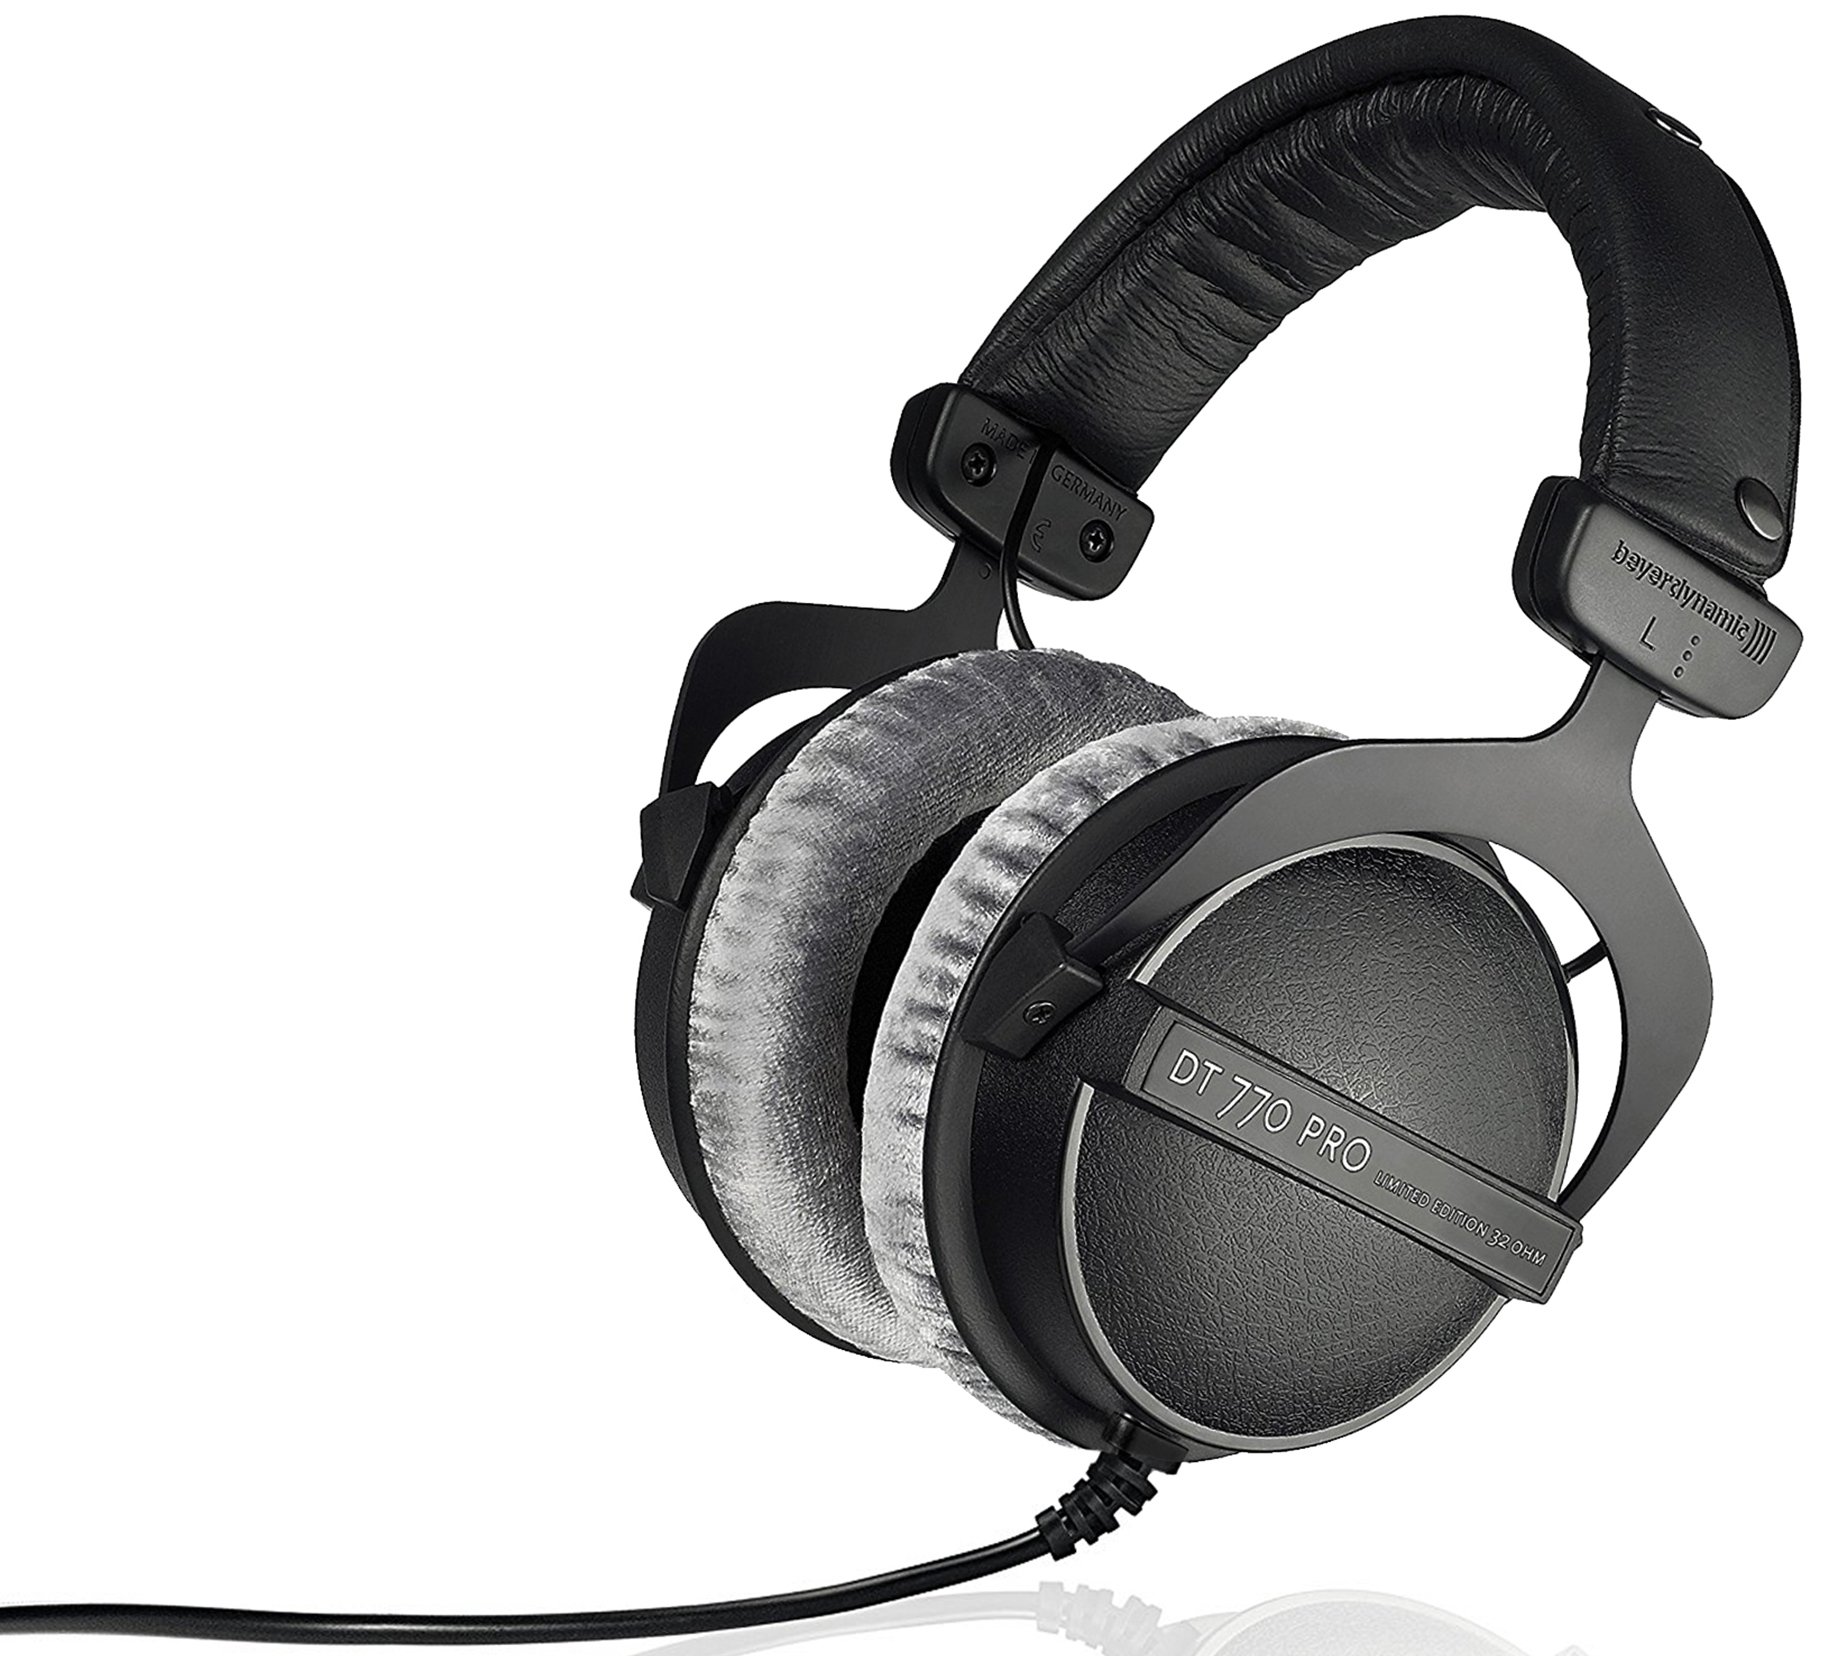 BeyerDynamic DT 770 Pro Studio 耳机 - 包耳式、封闭式、专业录音和监听设计...